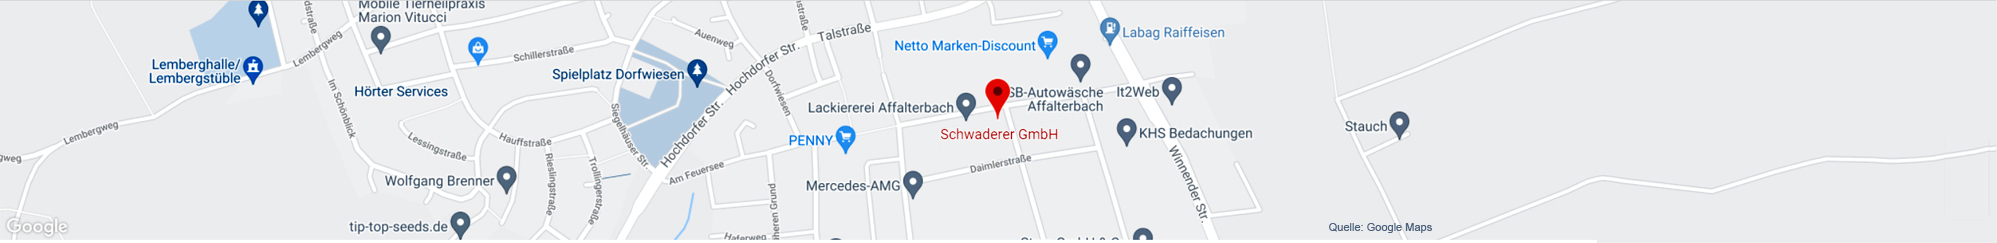 Schwaderer GmbH - GoogleMaps